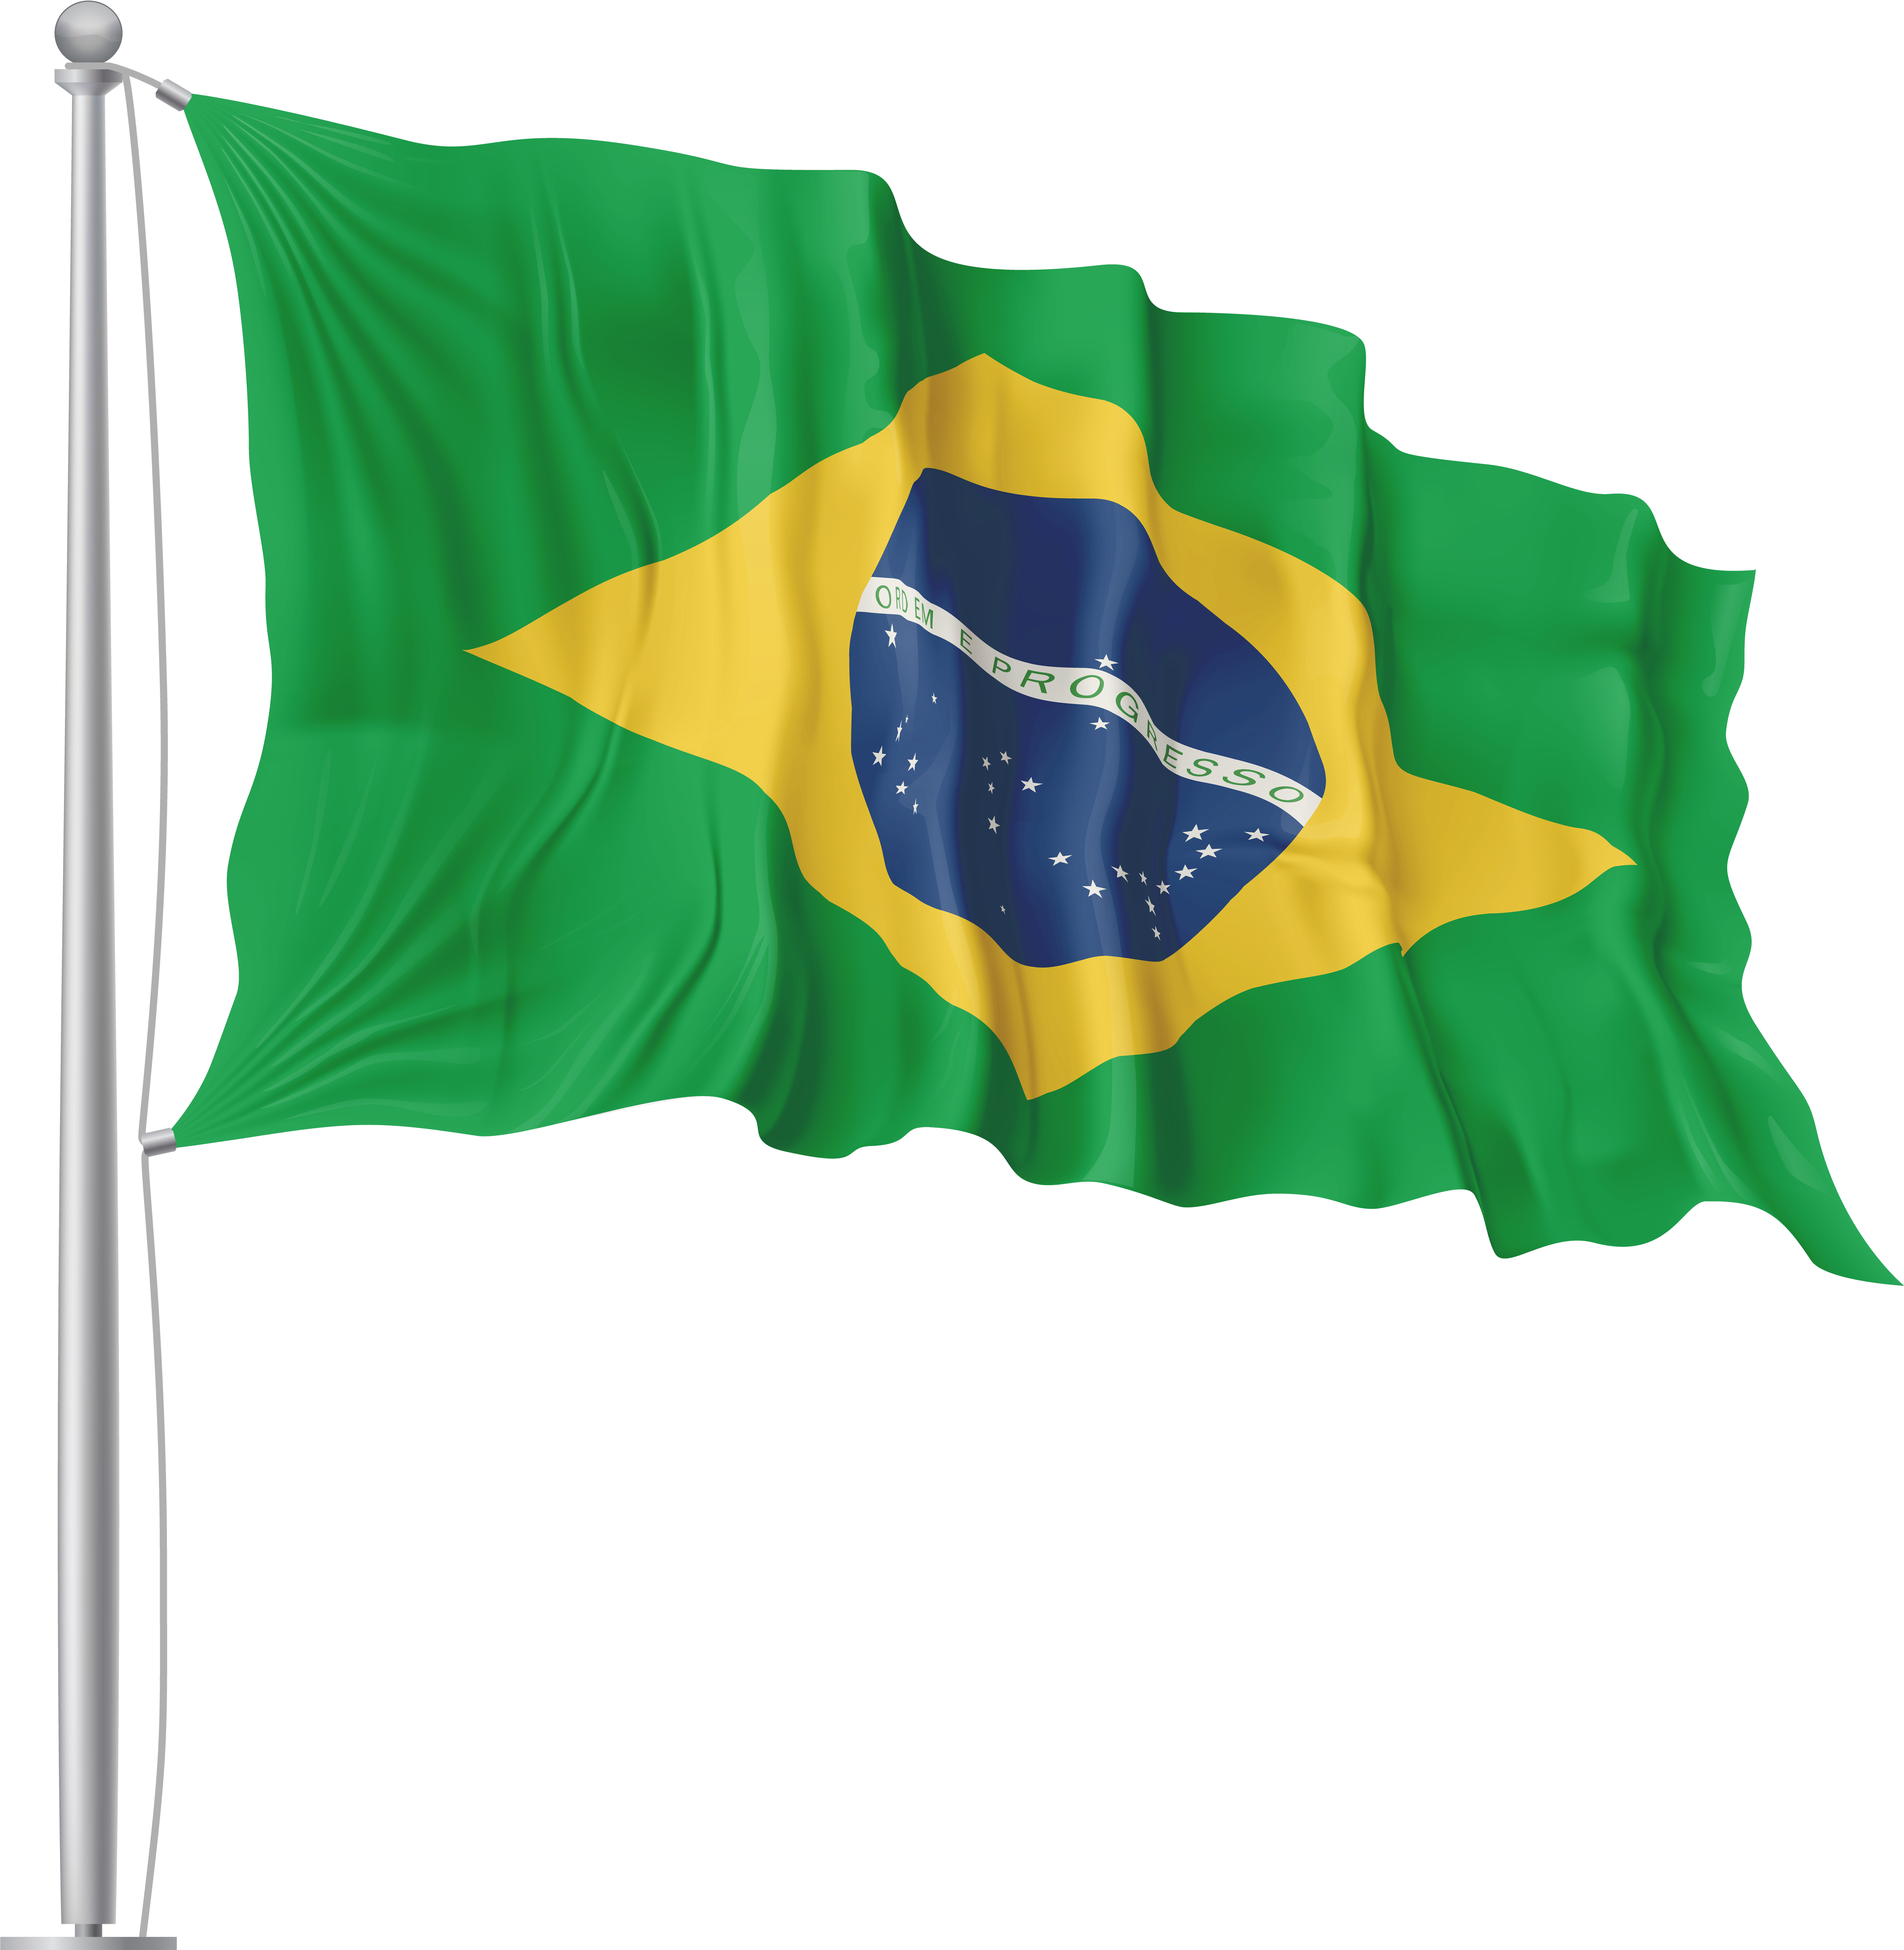 HD Brazil Flag Waving Transparent PNG Image Download.